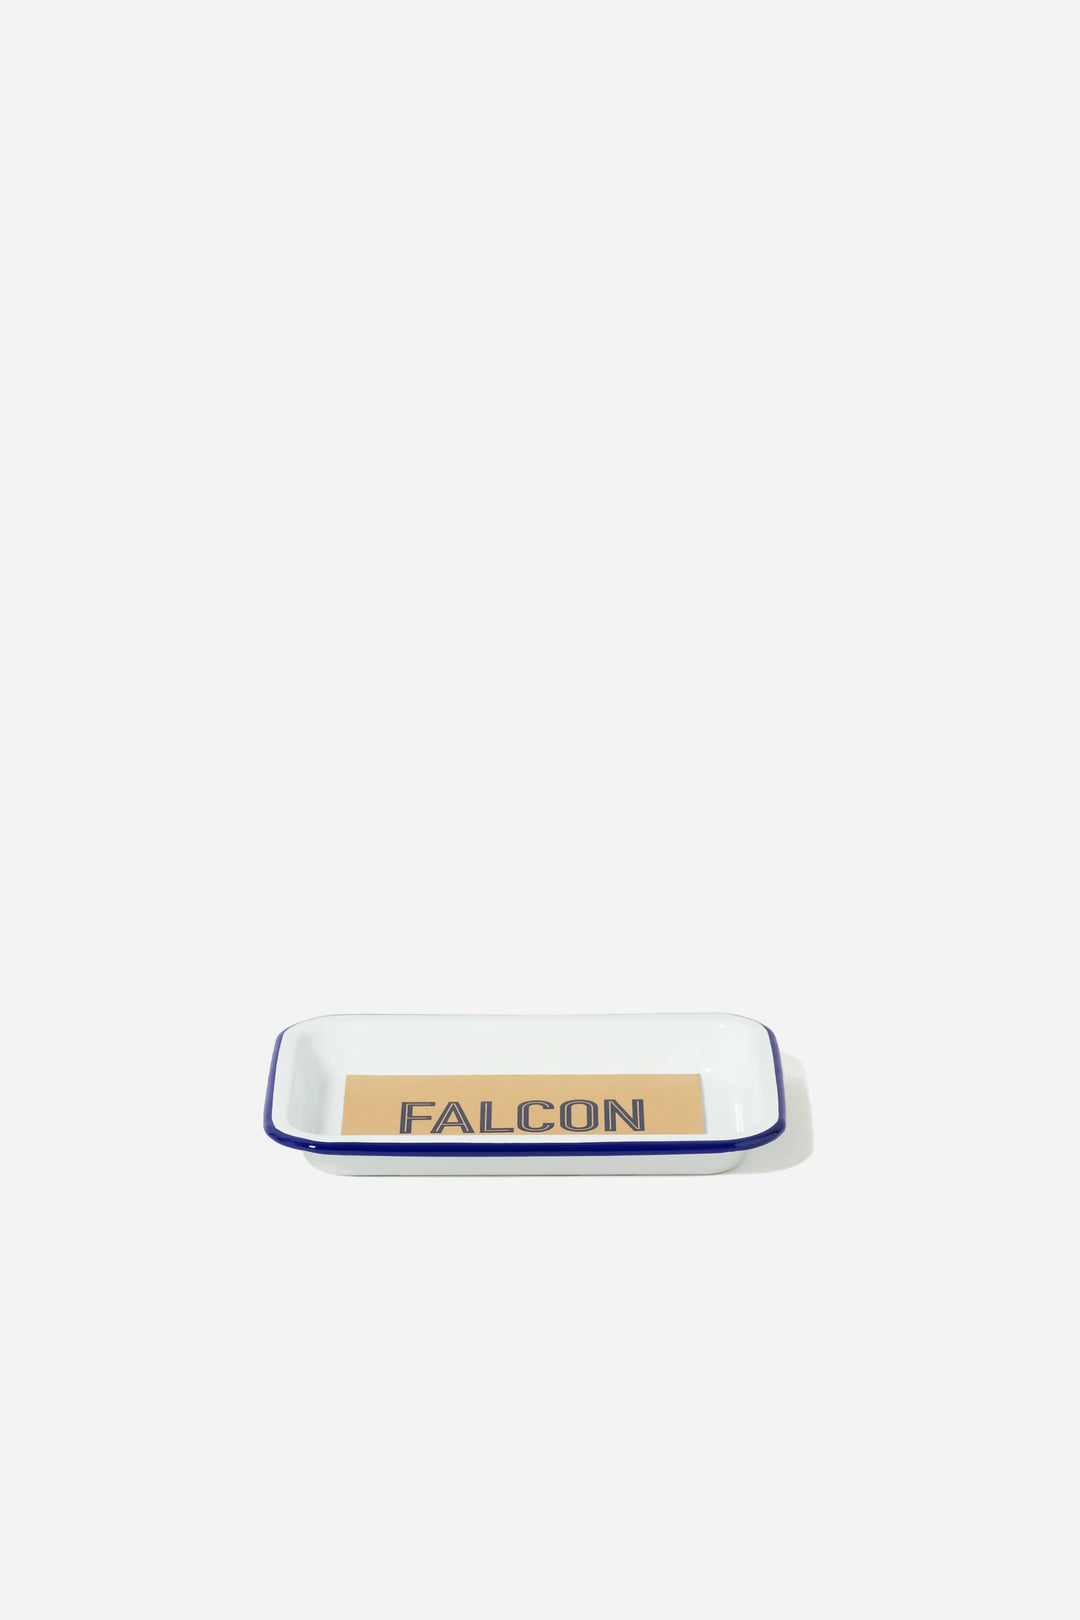 Falcon Small Tray / White w. Blue Rim